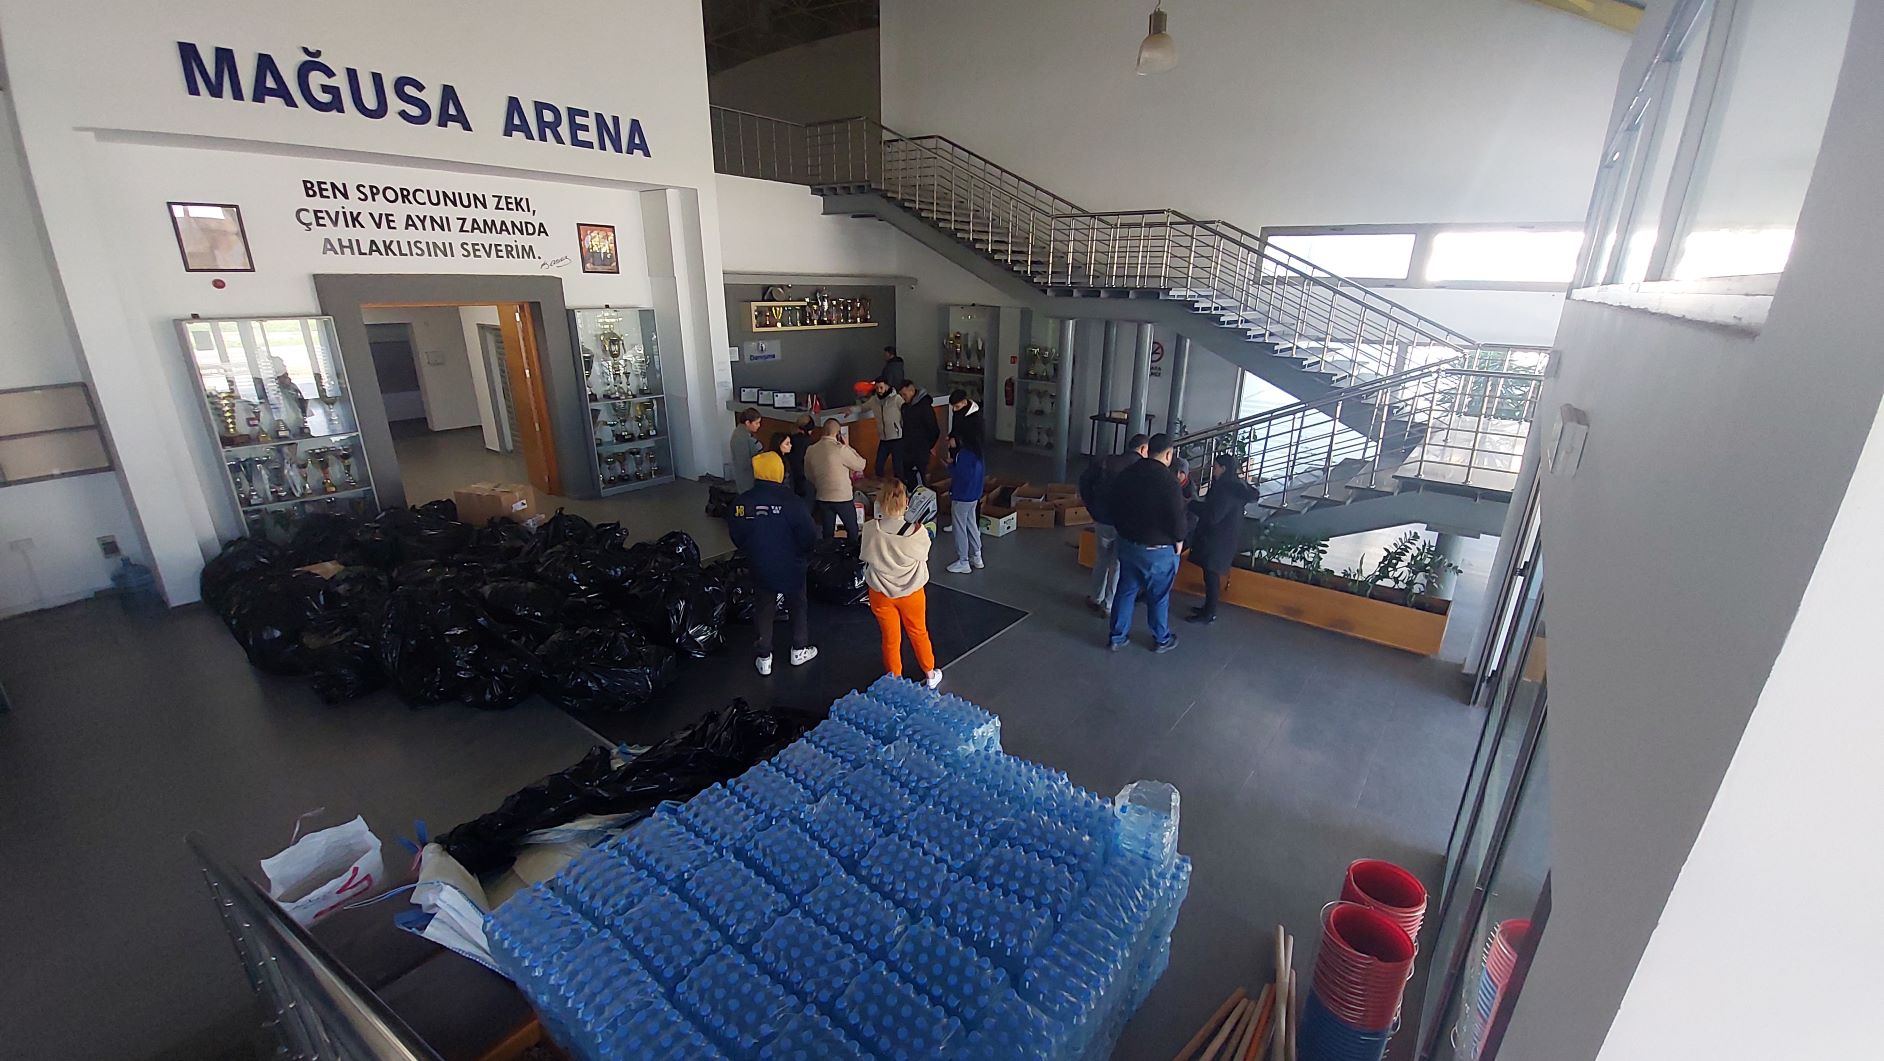 Gazimağusa Belediyesi, Mağusa Arena'da afetzedeler için yardım malzemesi topluyor.